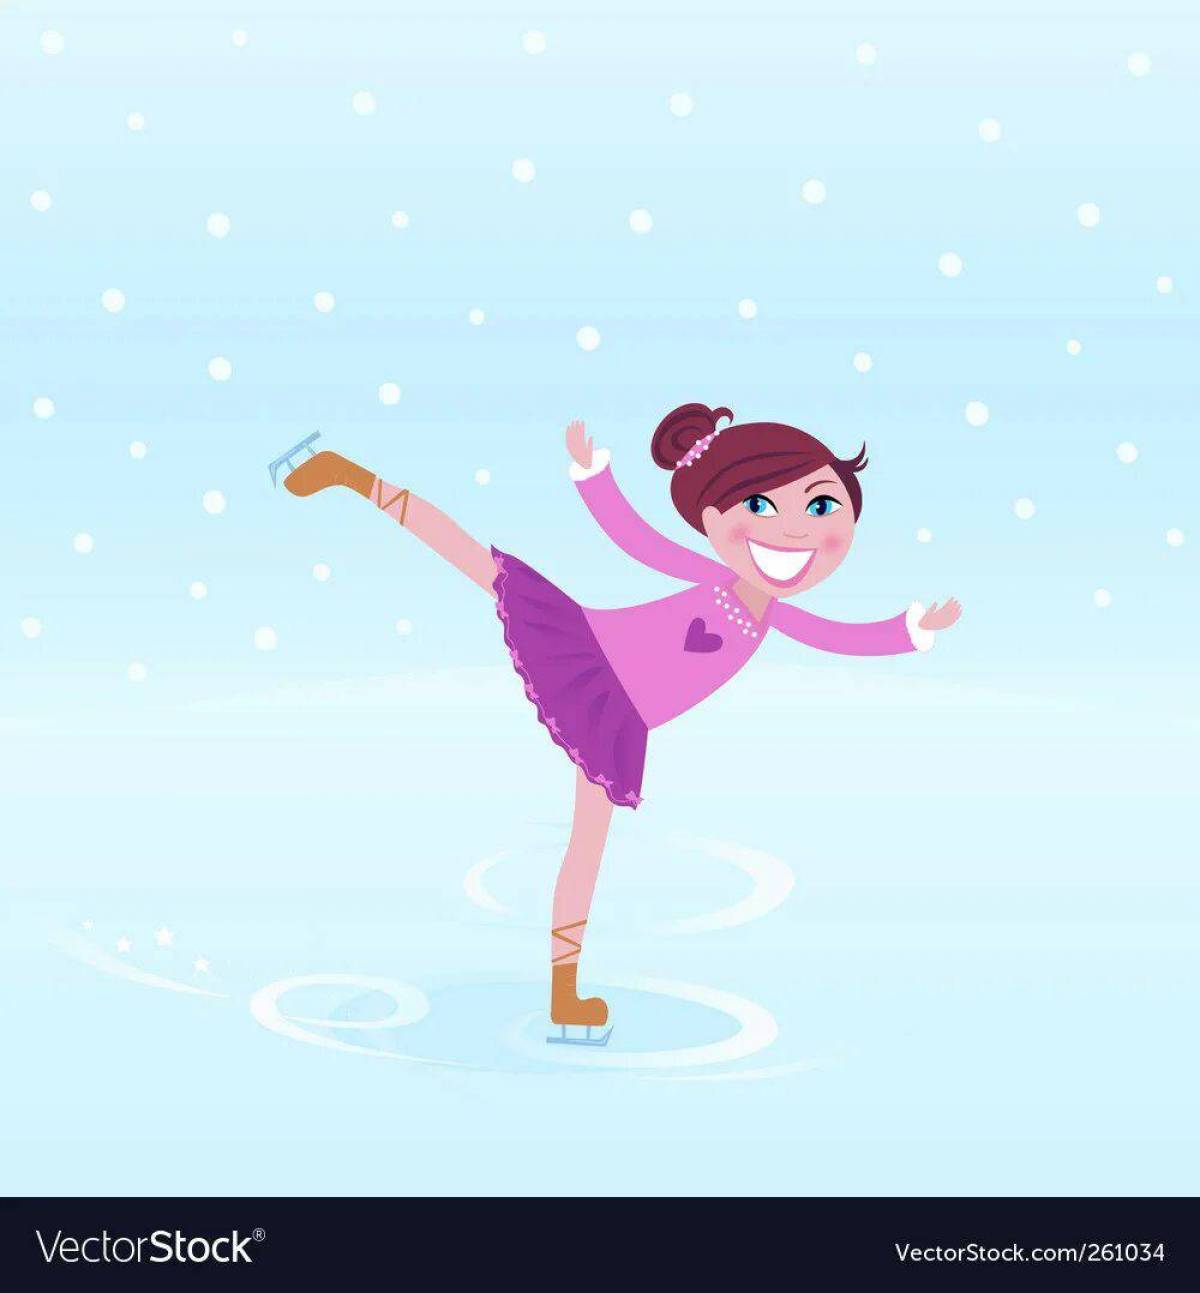 Девочка на коньках #22